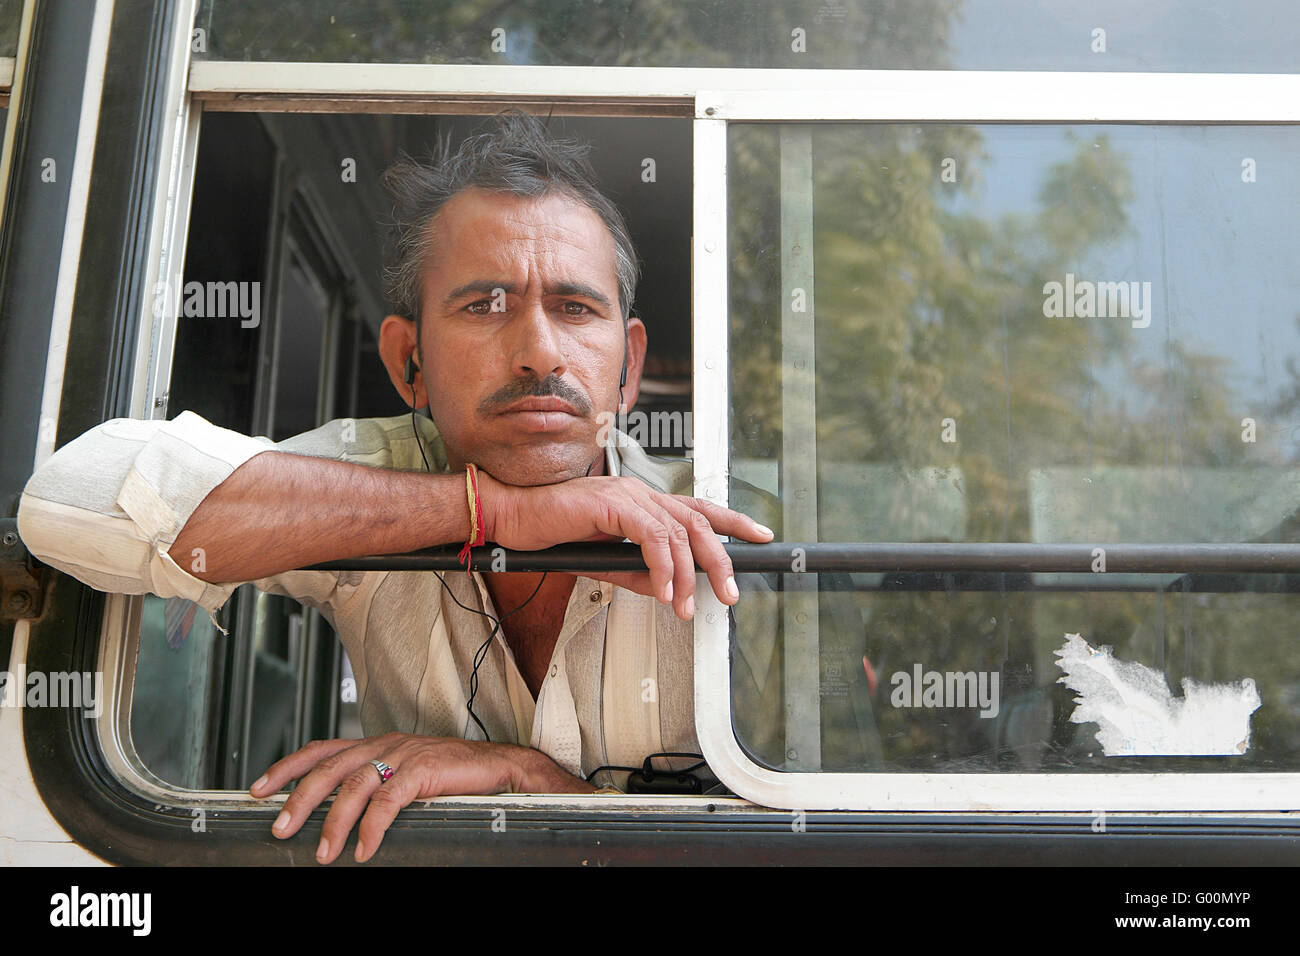 Pushkar, Inde:23 Novembre 2015:l'homme indien local non identifié pour poser à l'intérieur de l'autobus de l'appareil photo dans les rues de Pushkar, Inde. Banque D'Images